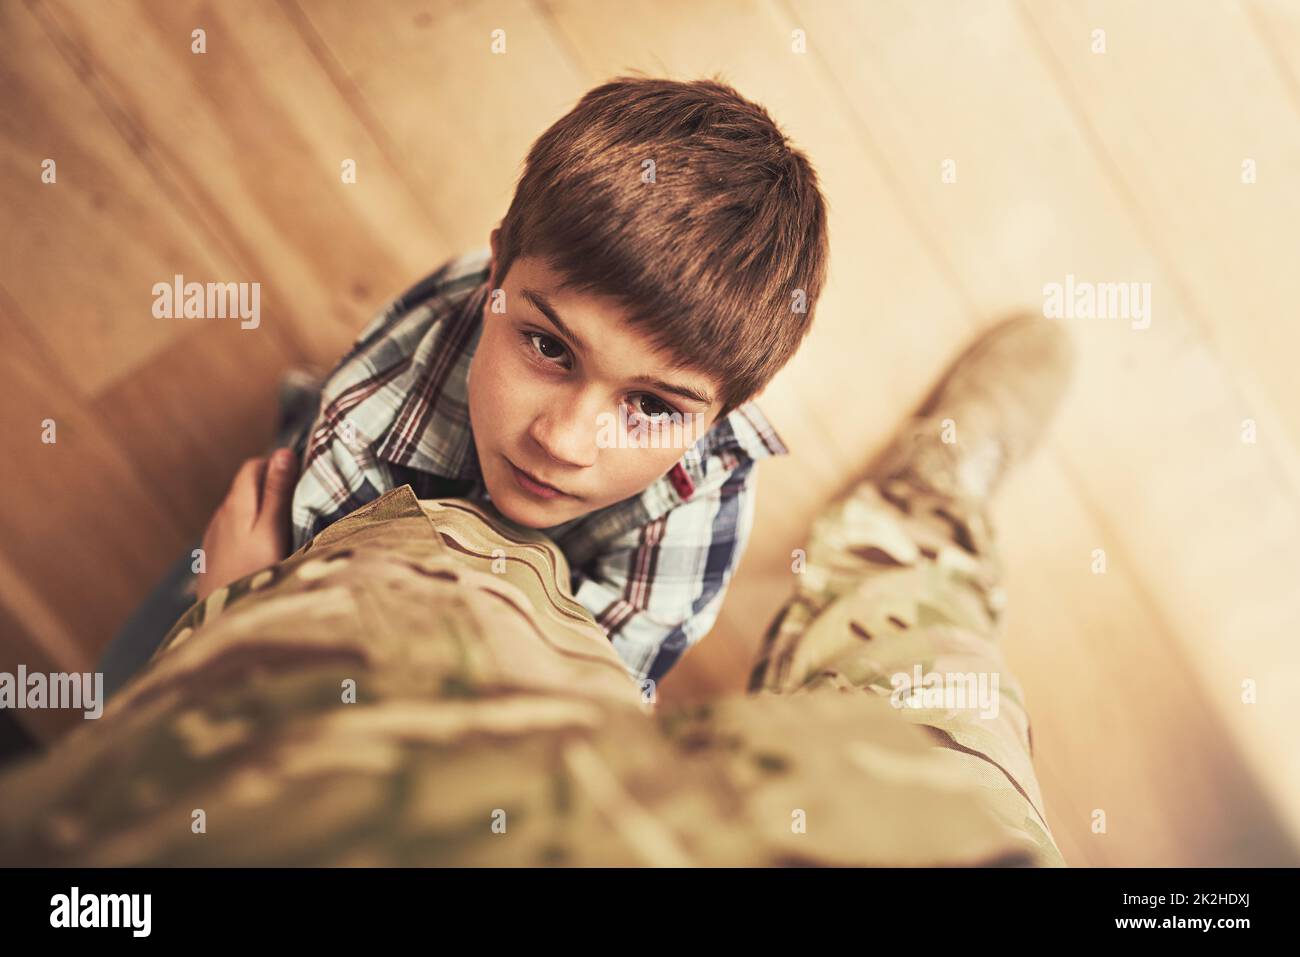 Müssen Sie wirklich gehen. Aufnahme eines Jungen, der sich an das Bein seines Vaters klammert, um ihn davon abzuhalten, zur Armee zu gehen. Stockfoto